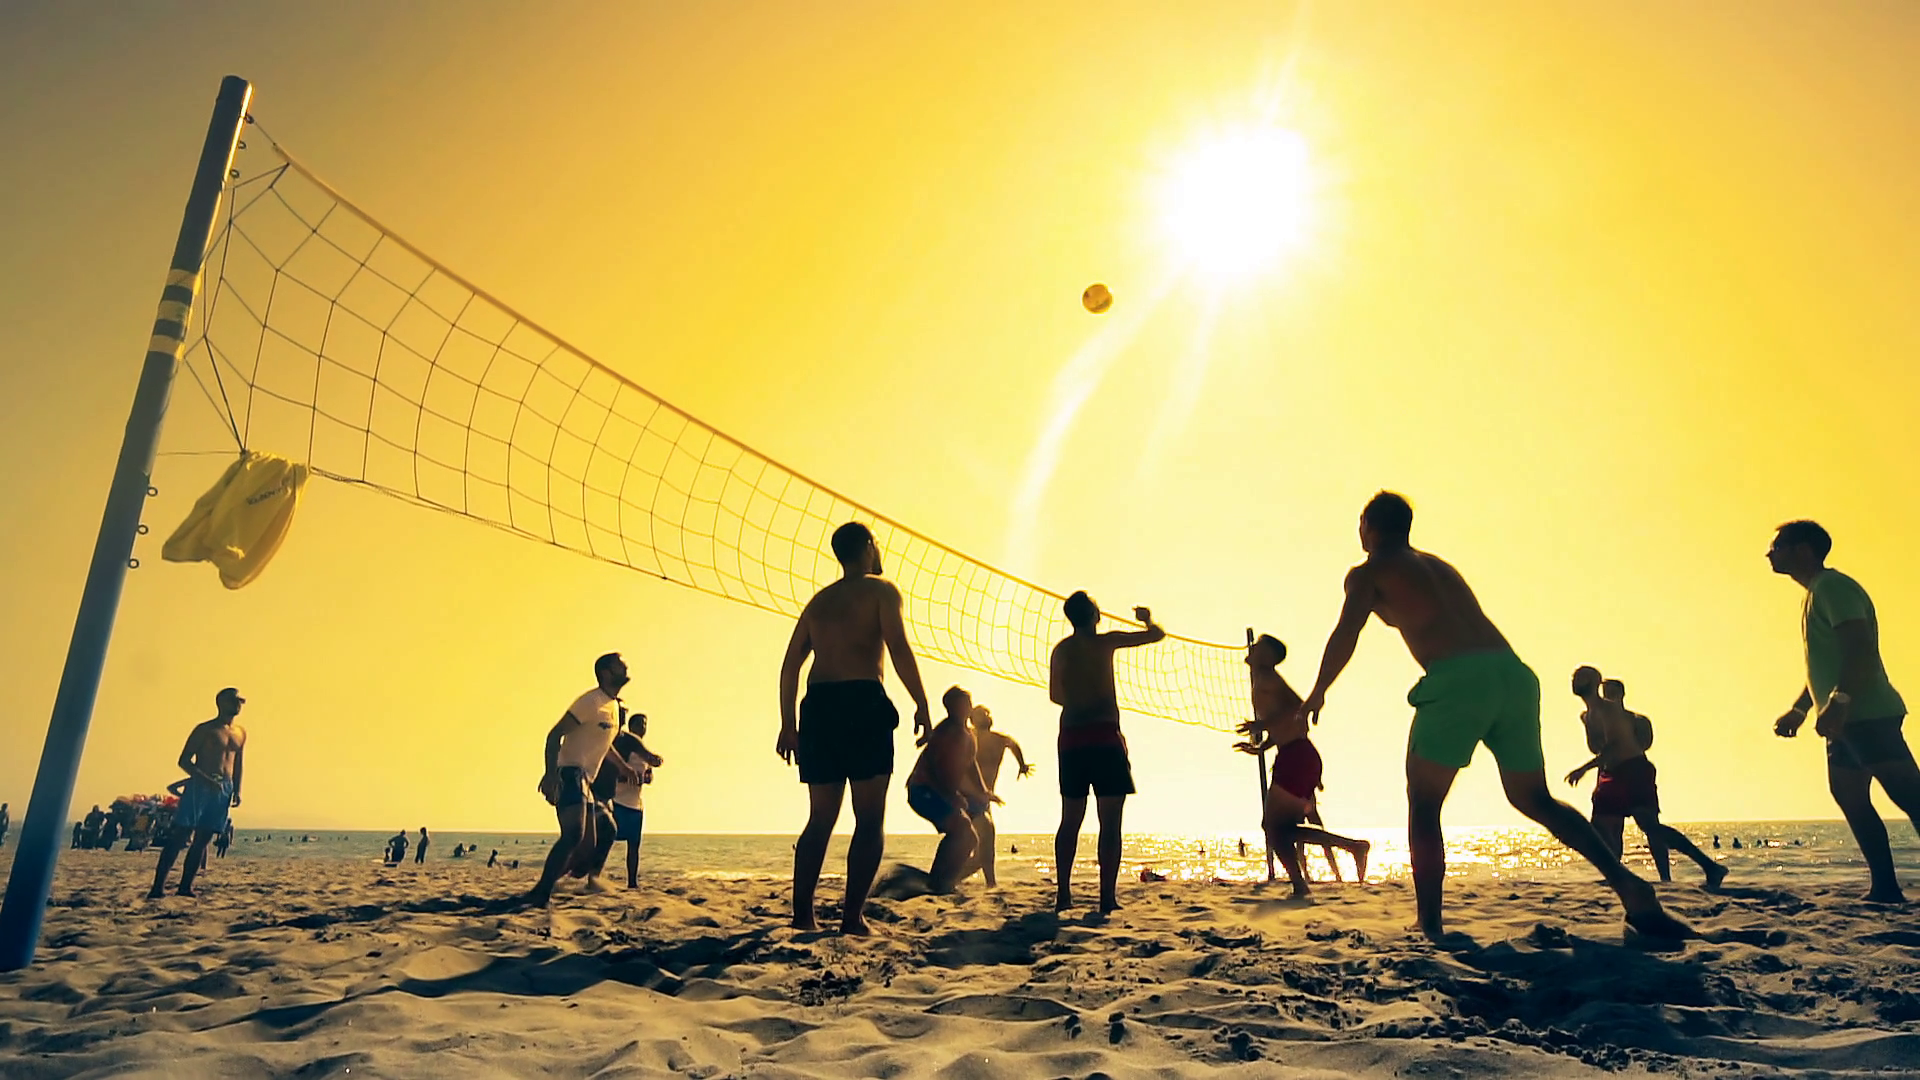 Волейбол на пляже. Пляжный волейбол. Волейбол семья. Пляж волейбол фон. What sport do you enjoy